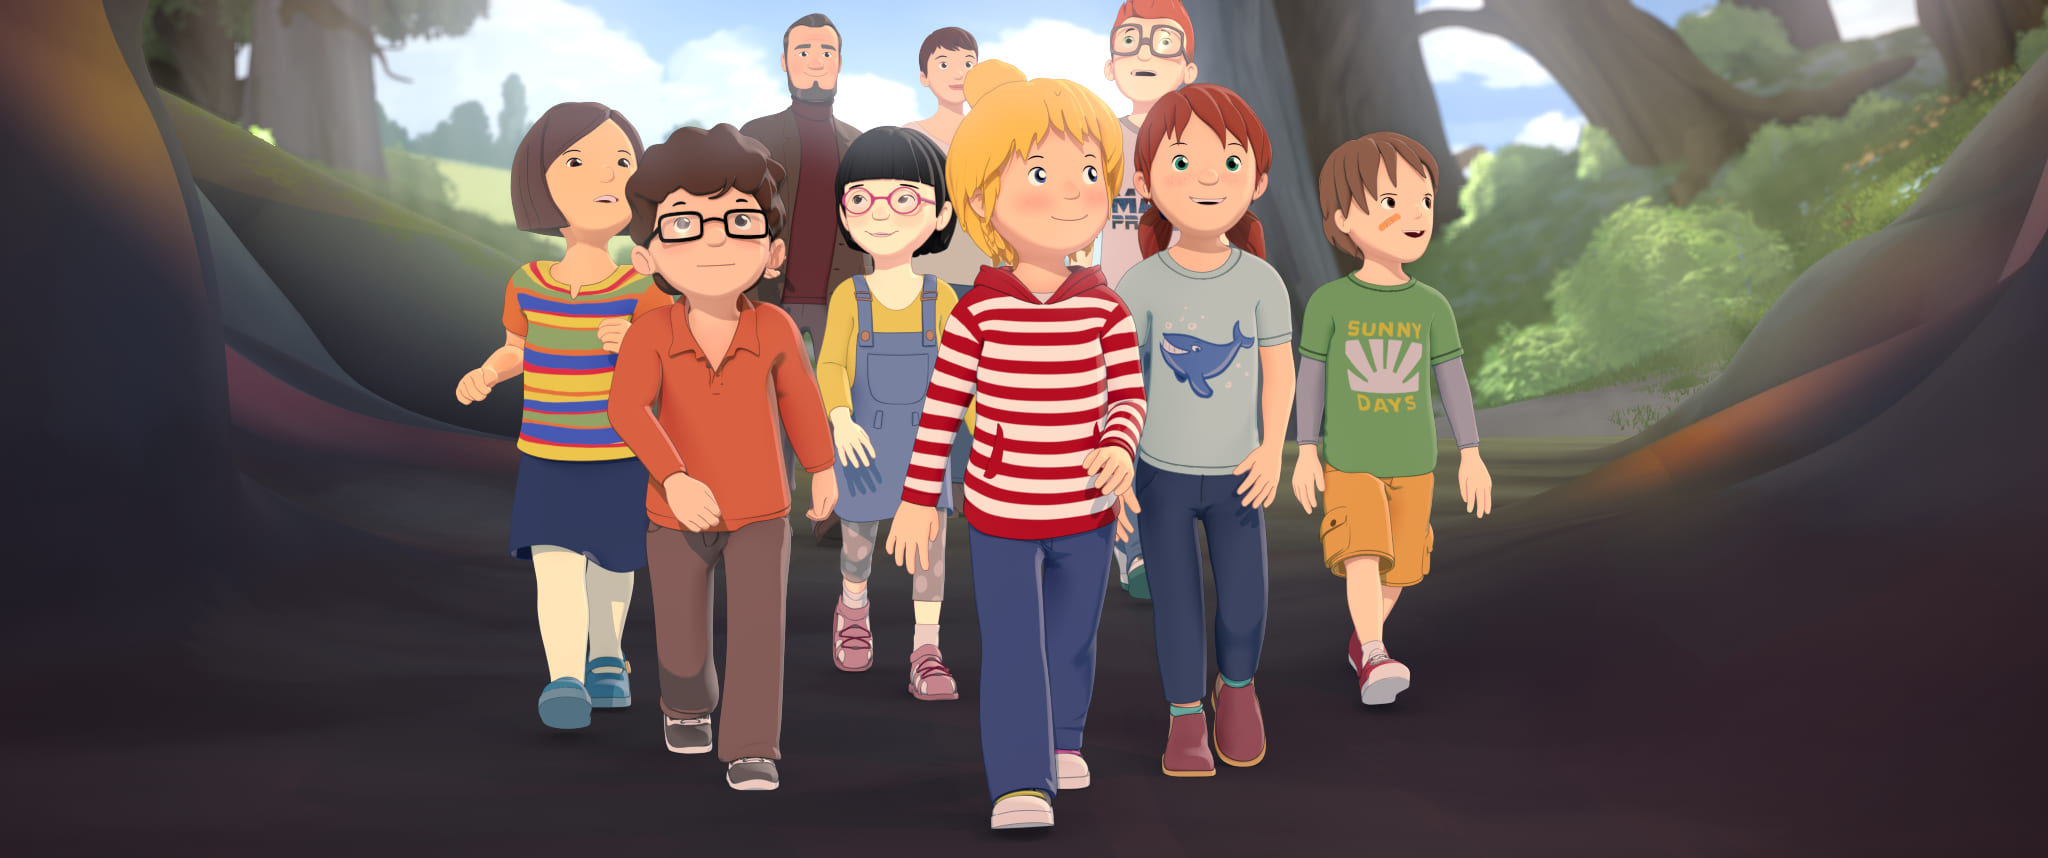 Eine Animation von einer Gruppe Kinder, die durch einen Wald läuft. Hinter ihnen gehen drei Erwachsene. Alle schauen staunend um sich.